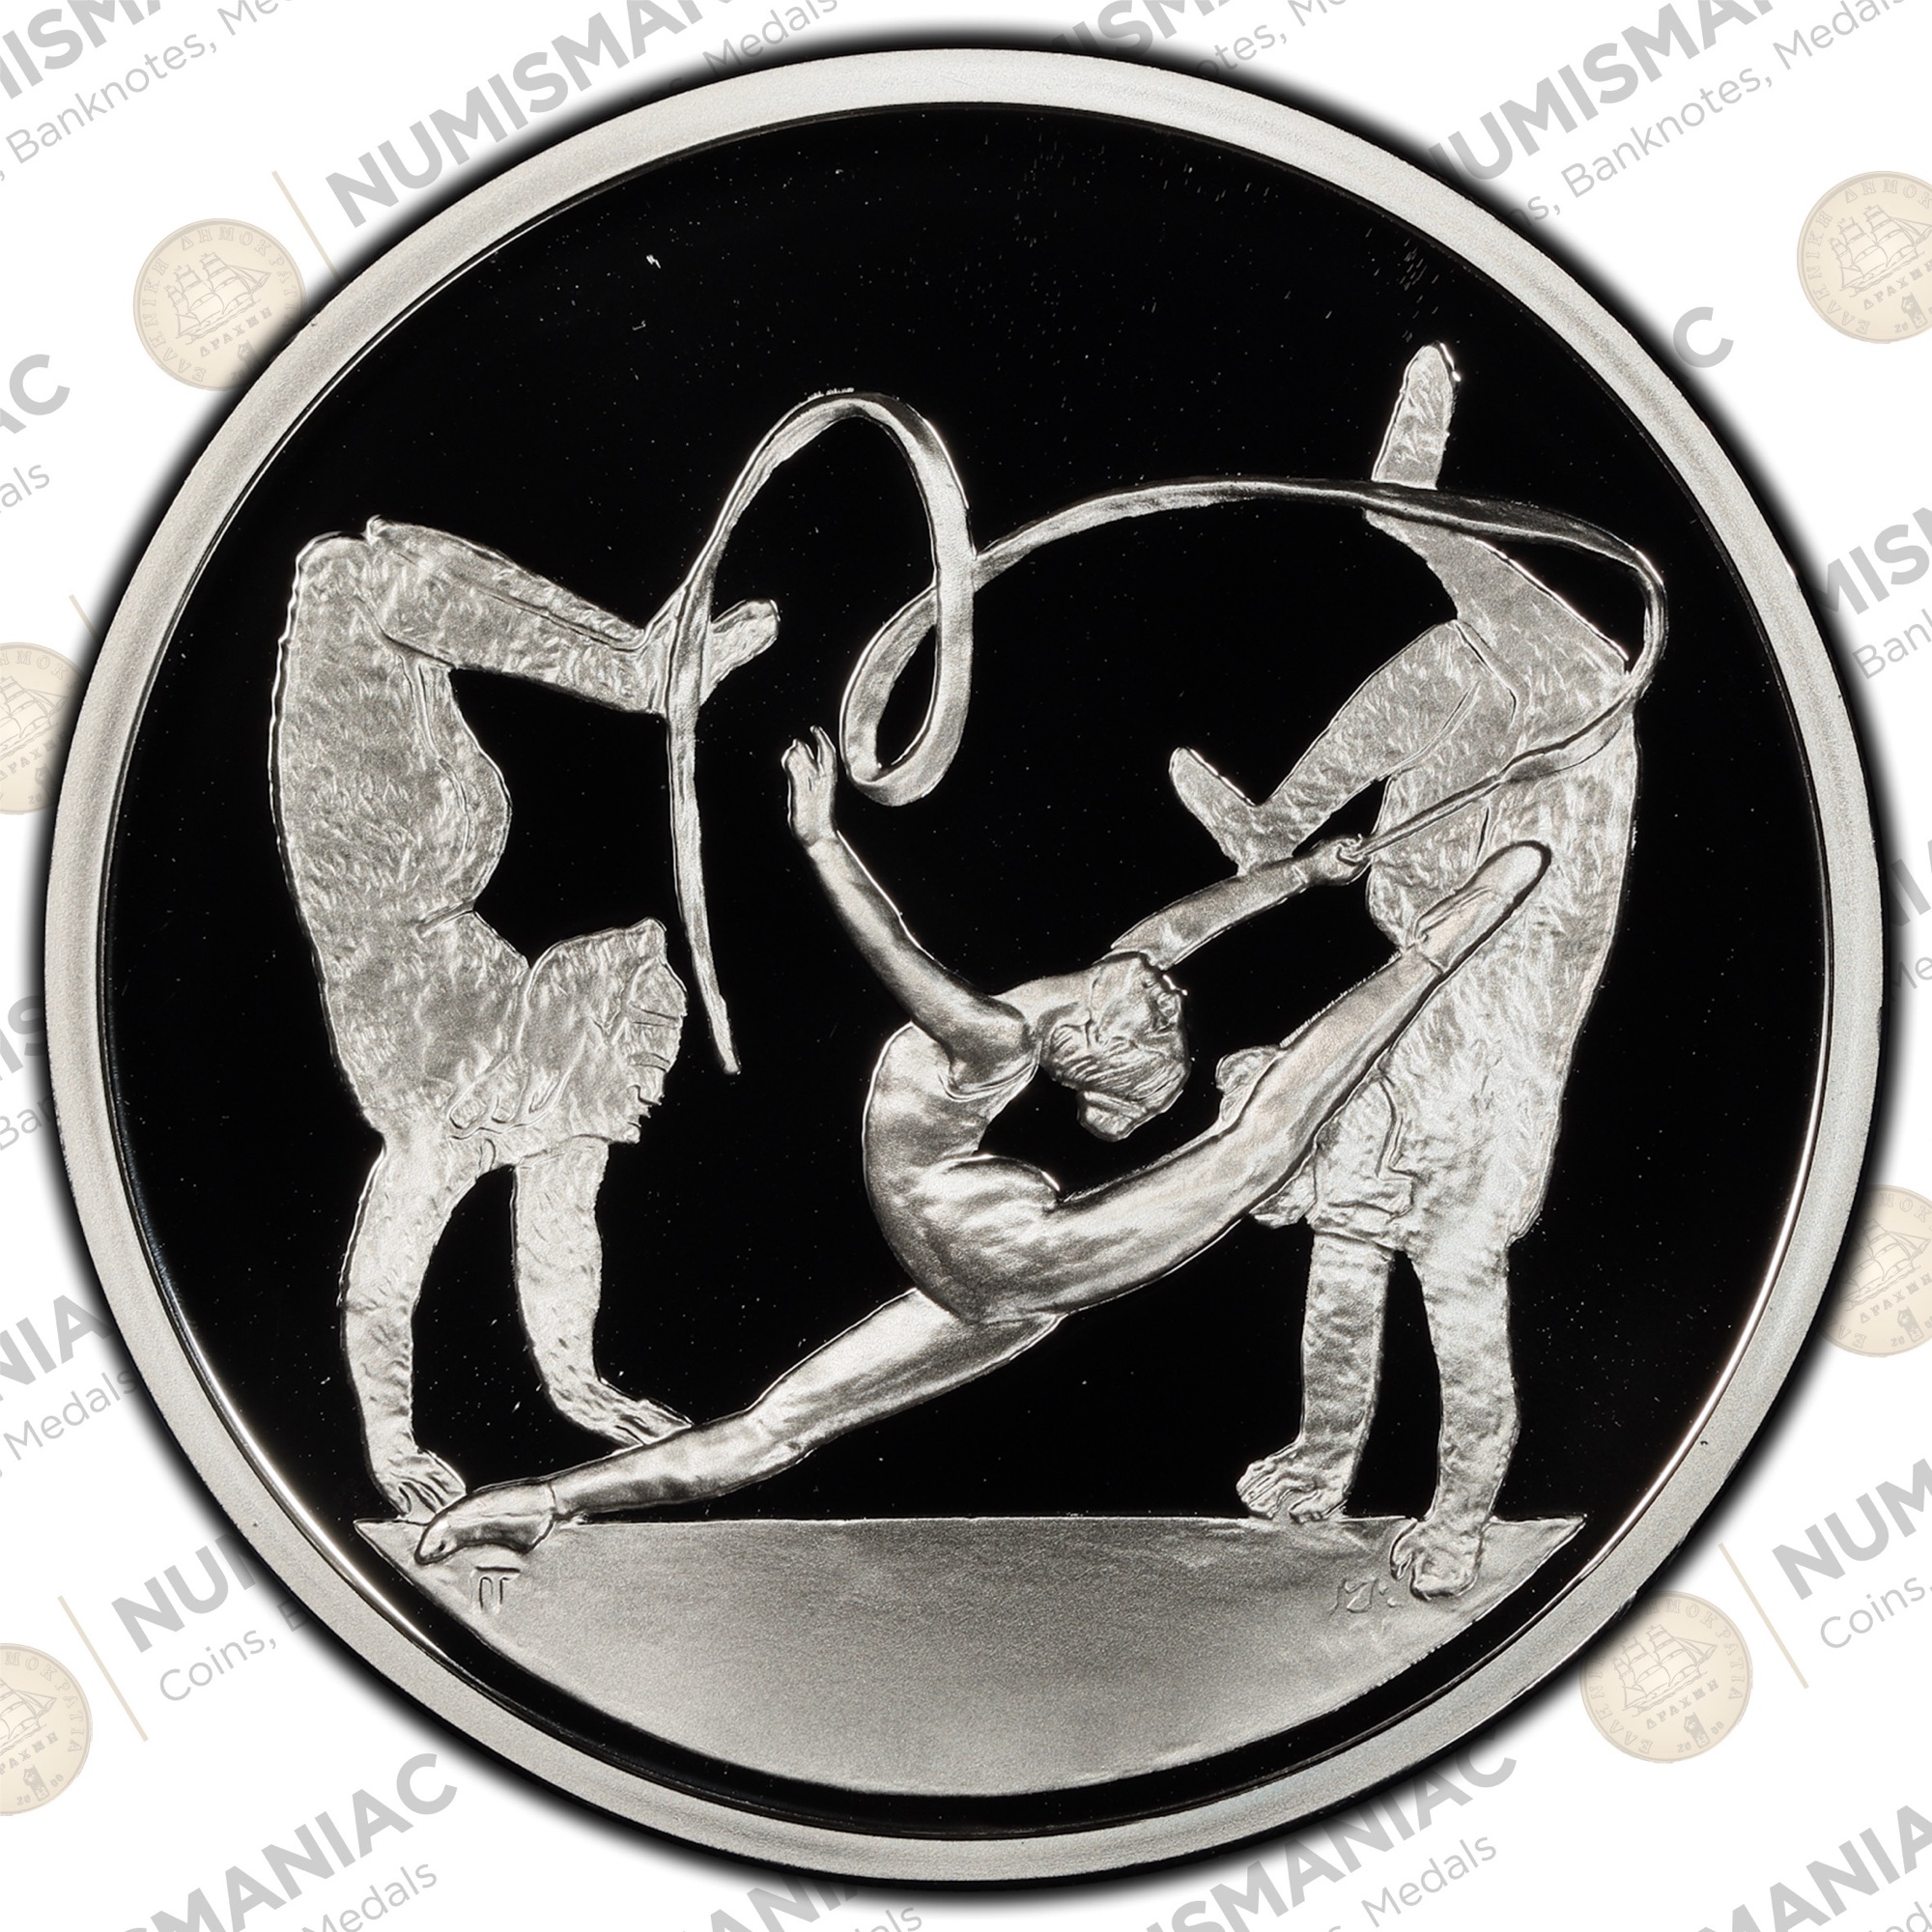 Greece 🇬🇷 10 Euro 2003 "Rhythmic Gymnastics" 1oz Silver Bullion Proof Coin with capsule.a